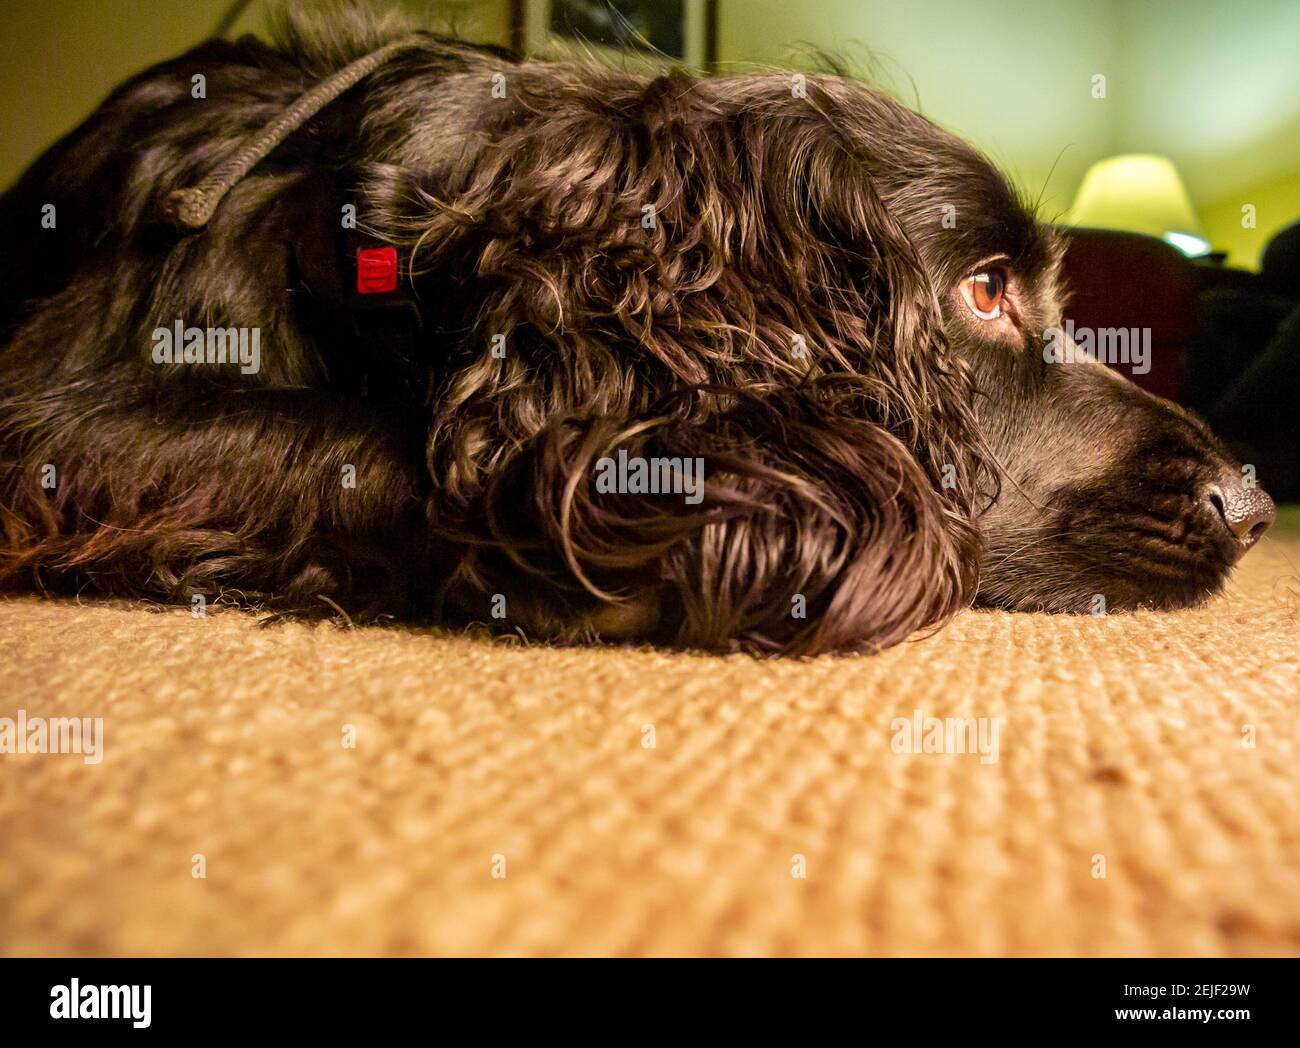 Cocker lavoro spaniel cane con i capelli neri giacente su tappeto in una casa con un'espressione stanca sul viso. Foto Stock